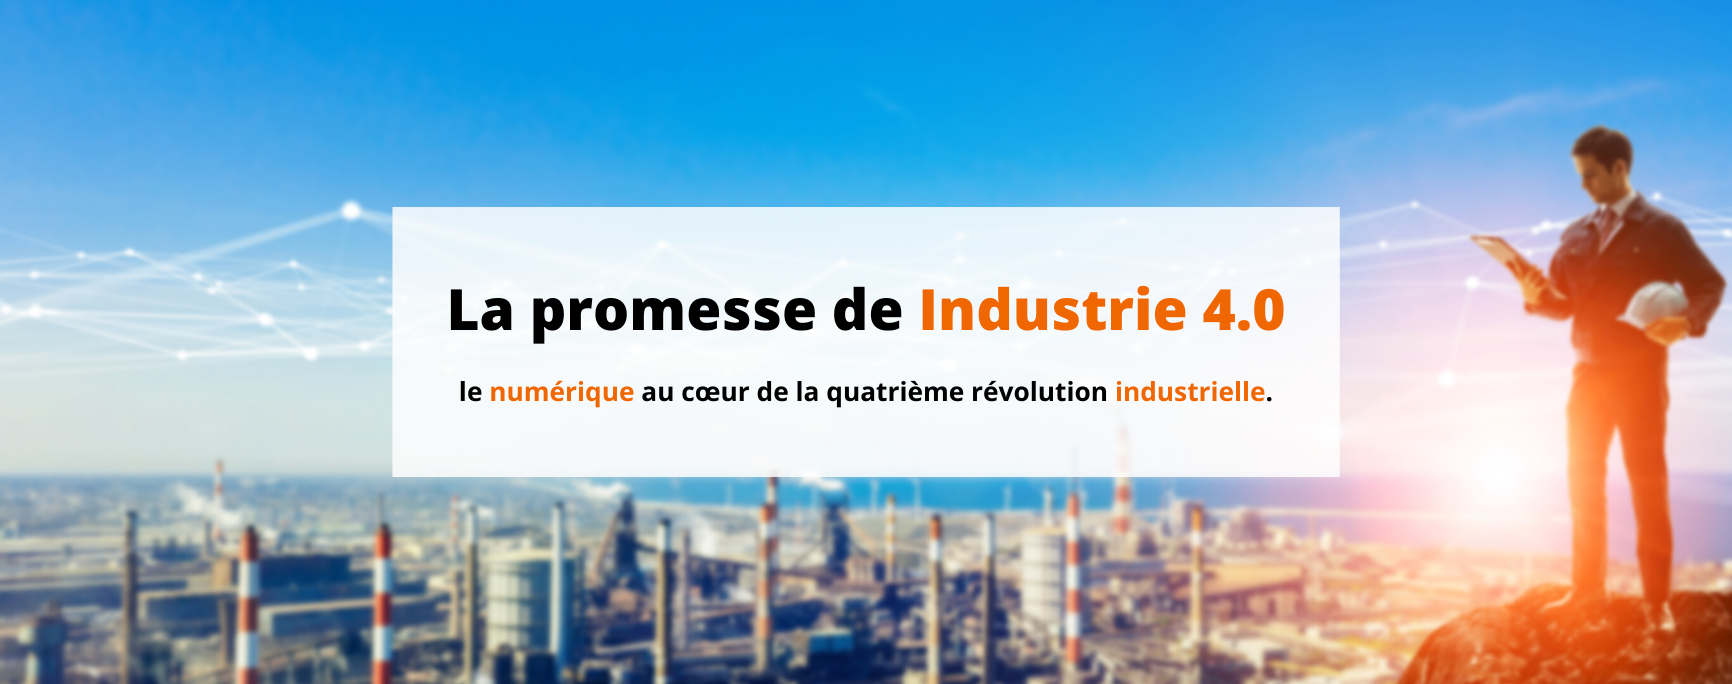 Promesse de l'industrie 4.0 - Bannière Site web